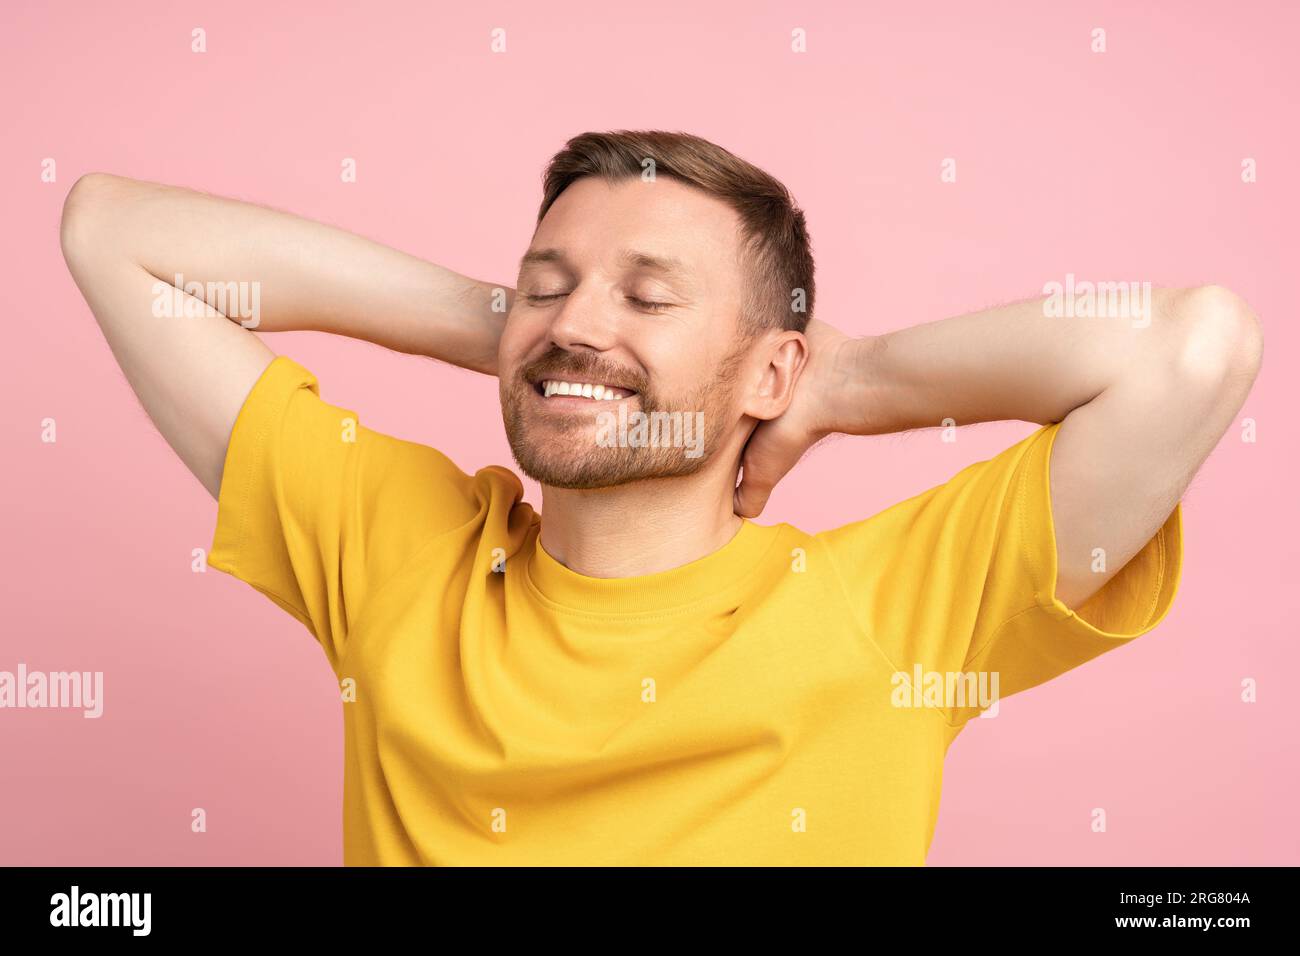 Uomo sorridente felice e soddisfatto con le mani dietro la testa che sogna, riposandosi sullo sfondo rosa dello studio Foto Stock